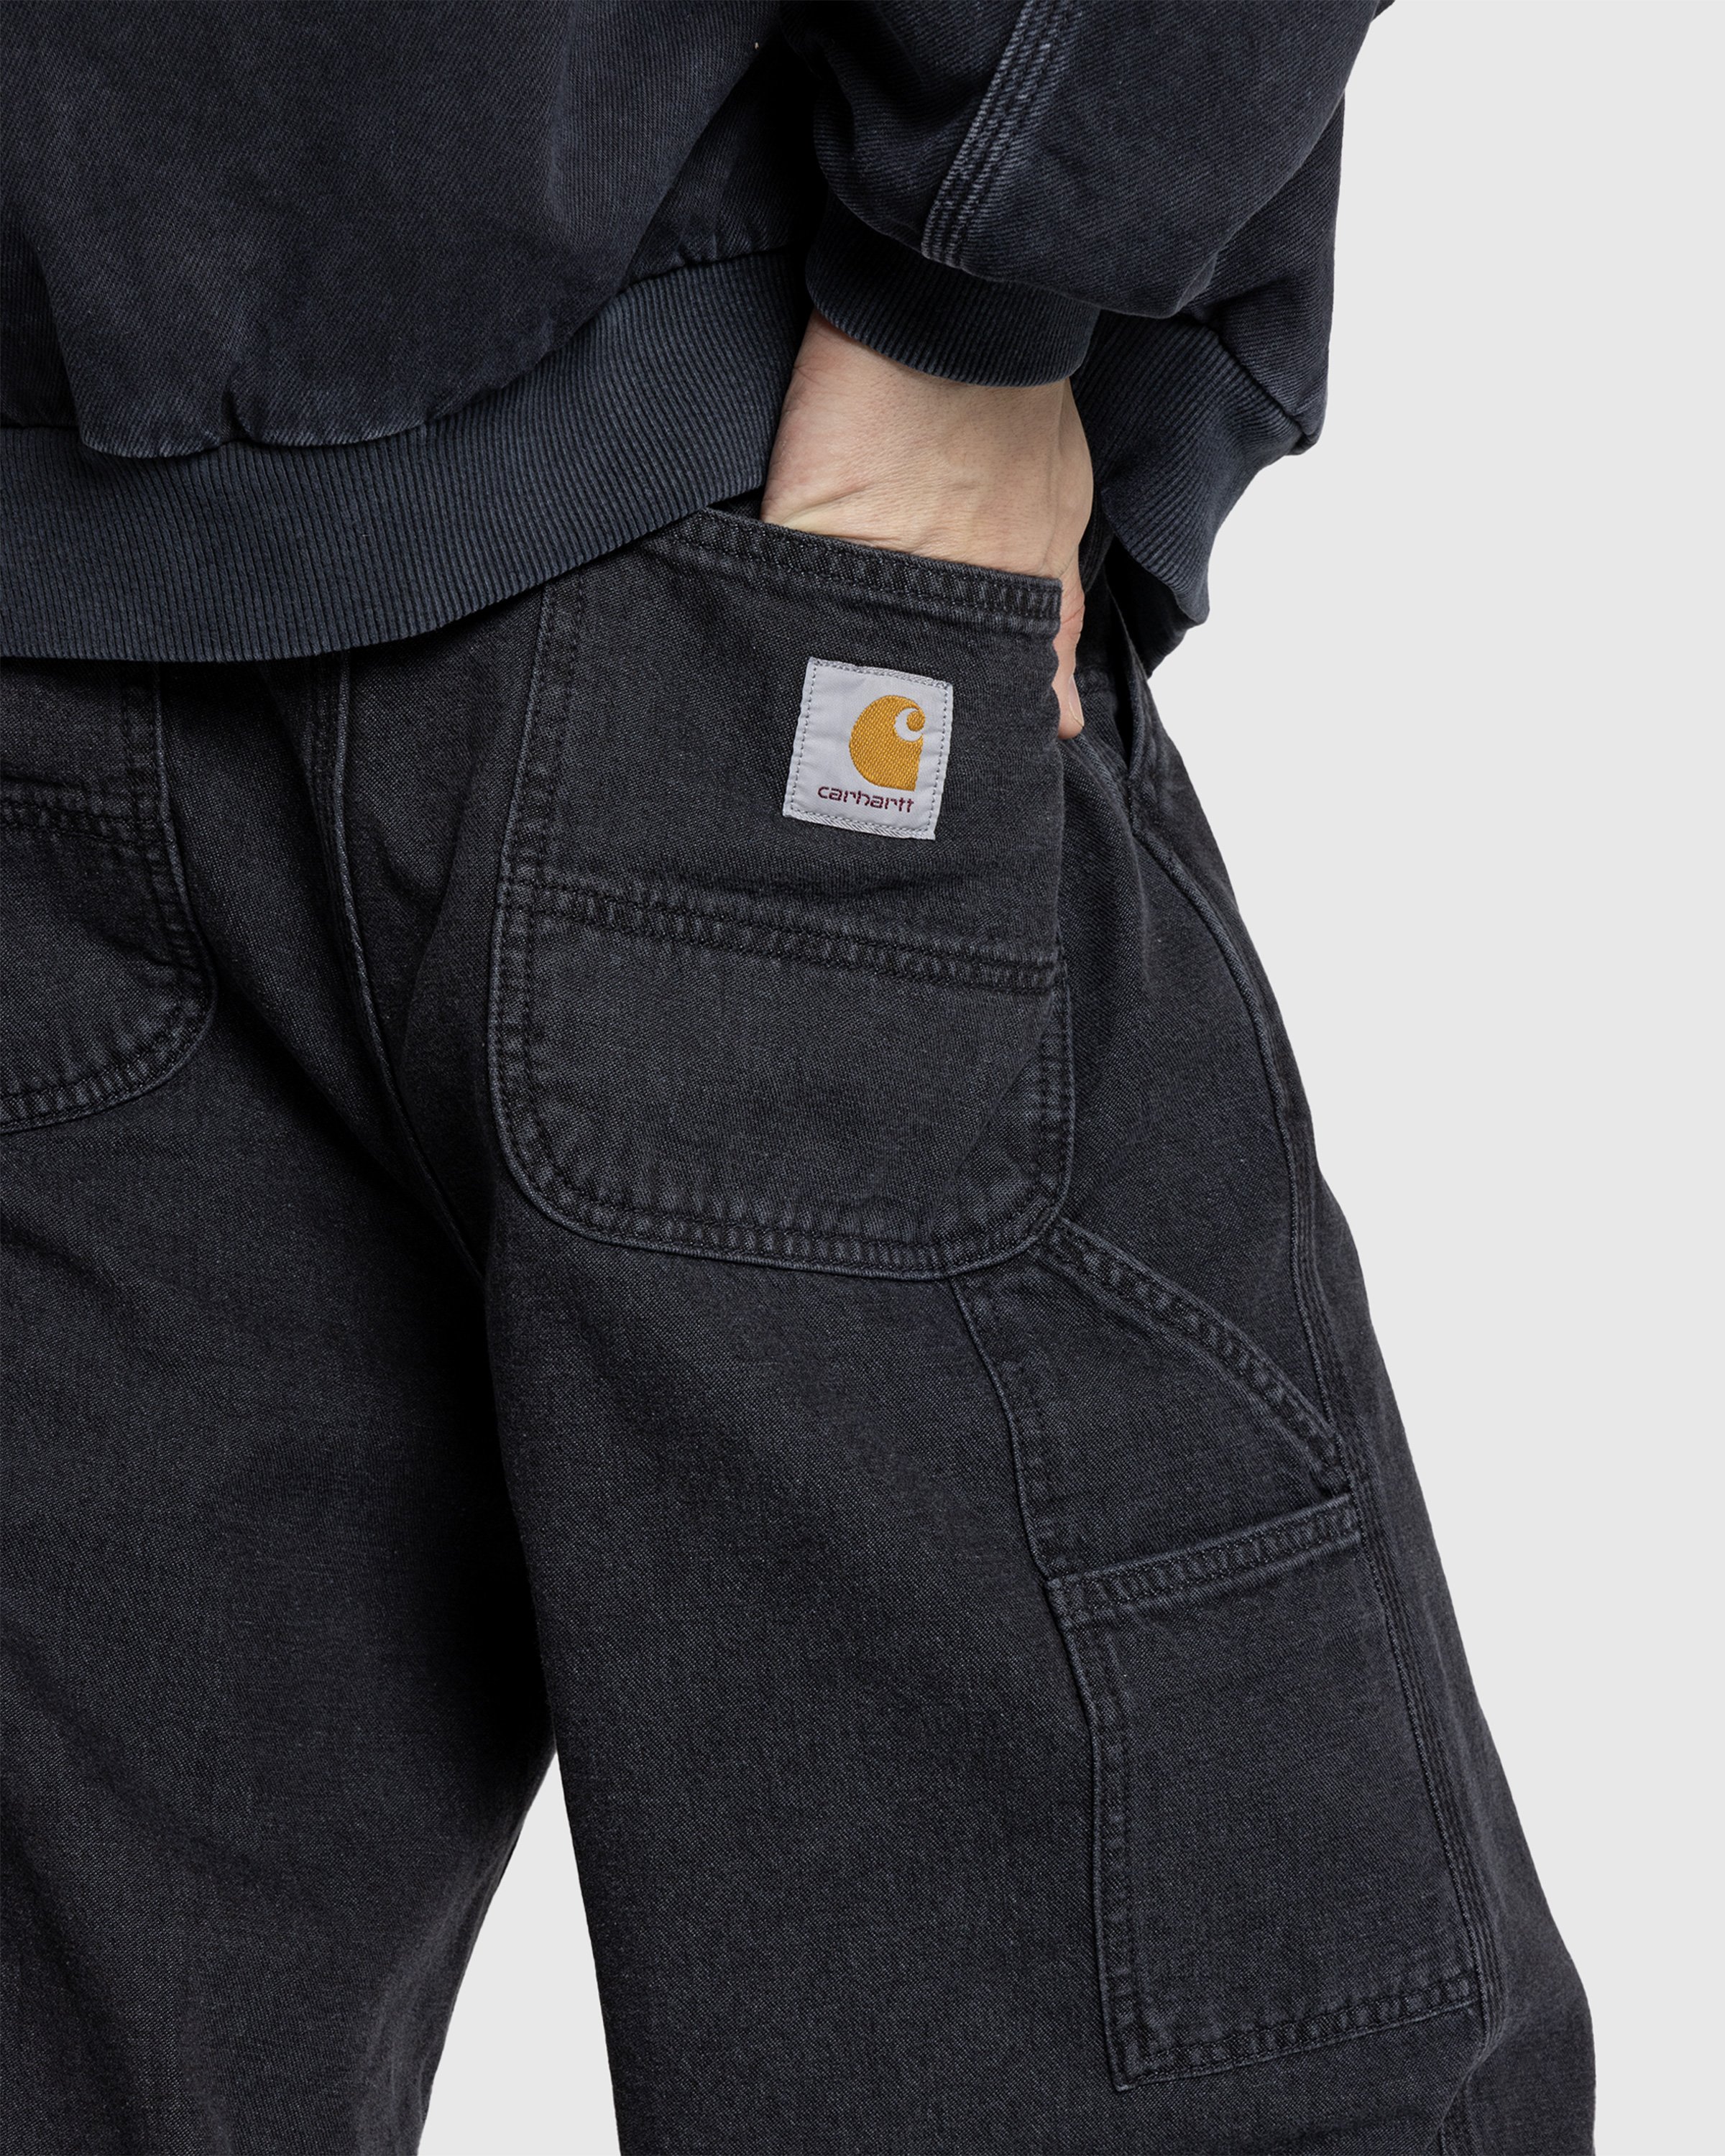 Carhartt WIP - OG Single Knee Pant Black /stone washed - Clothing - Black - Image 5